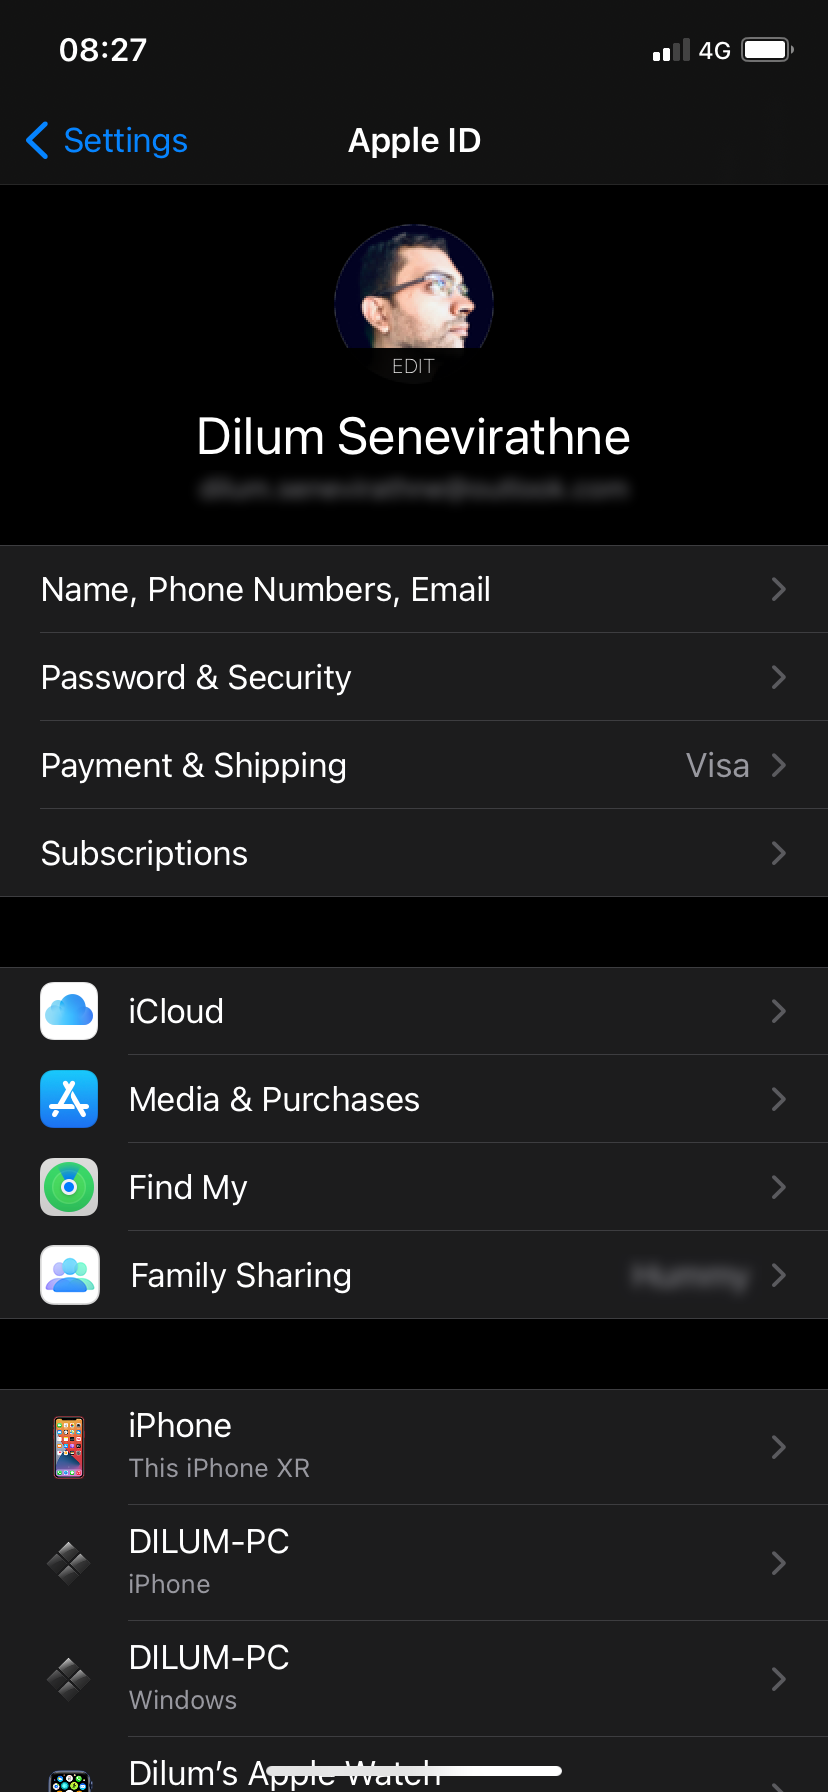 Apple ID settings on iPhone.